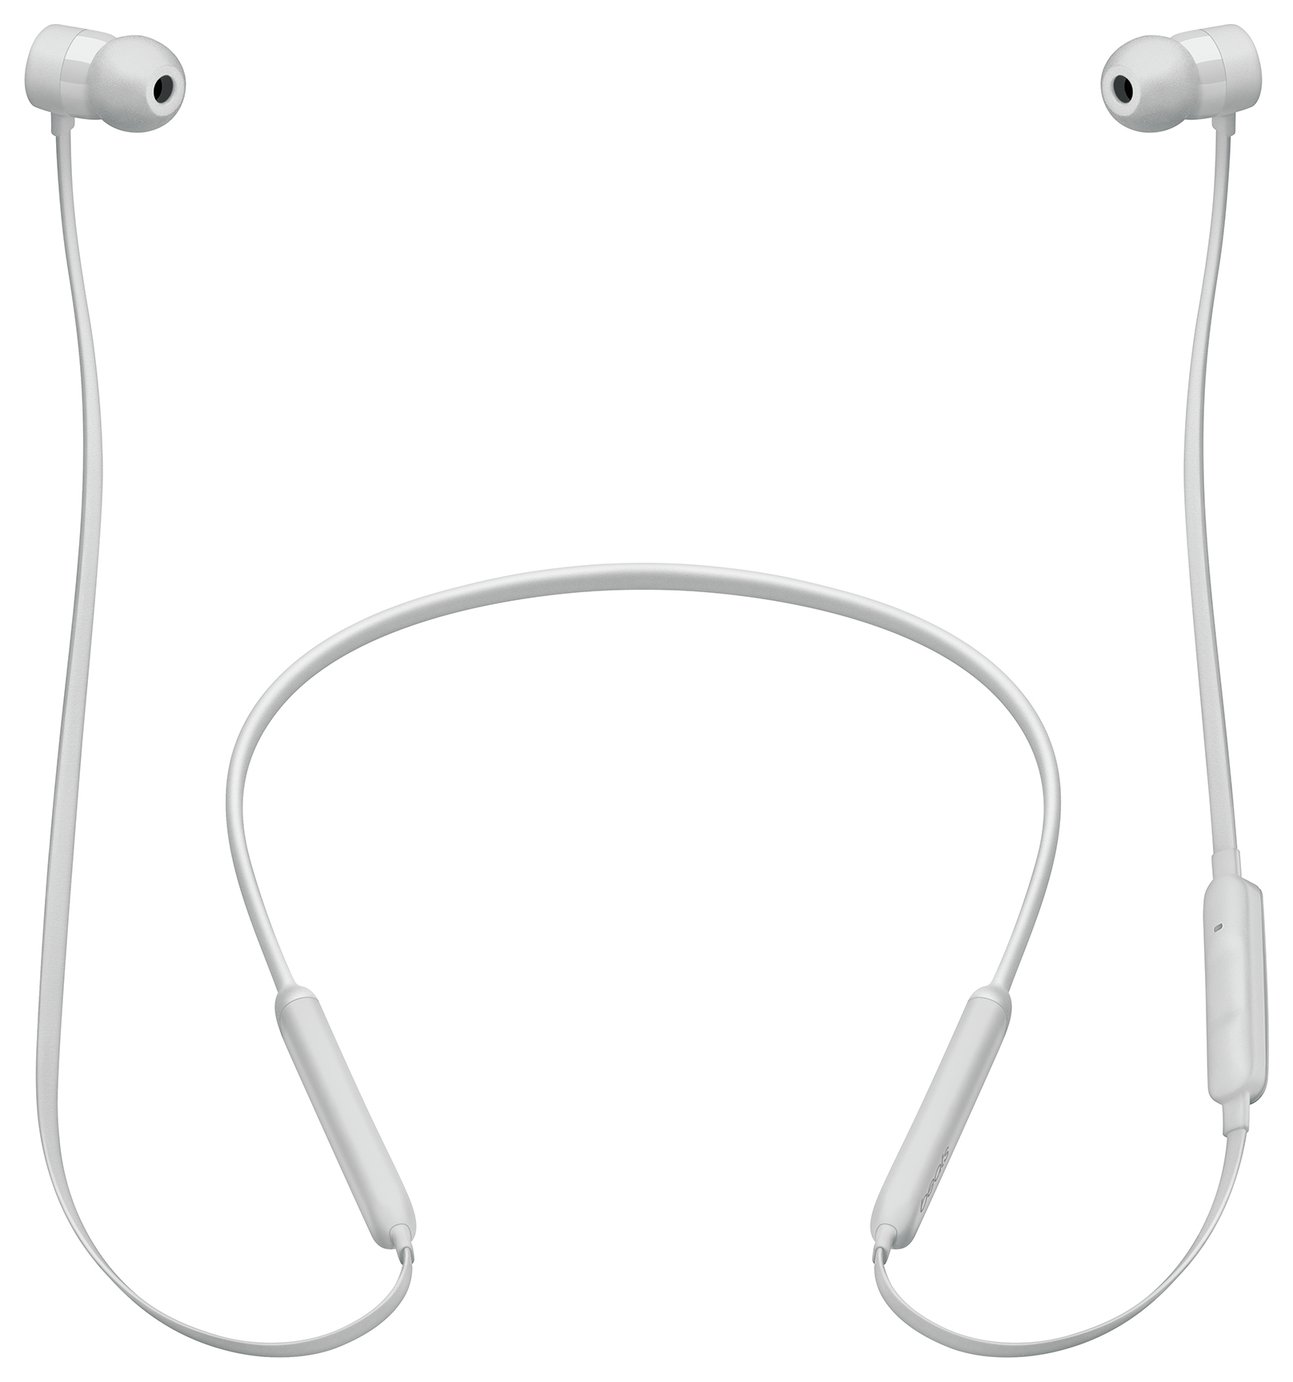 Beats X In-Ear Wireless Earphones Review